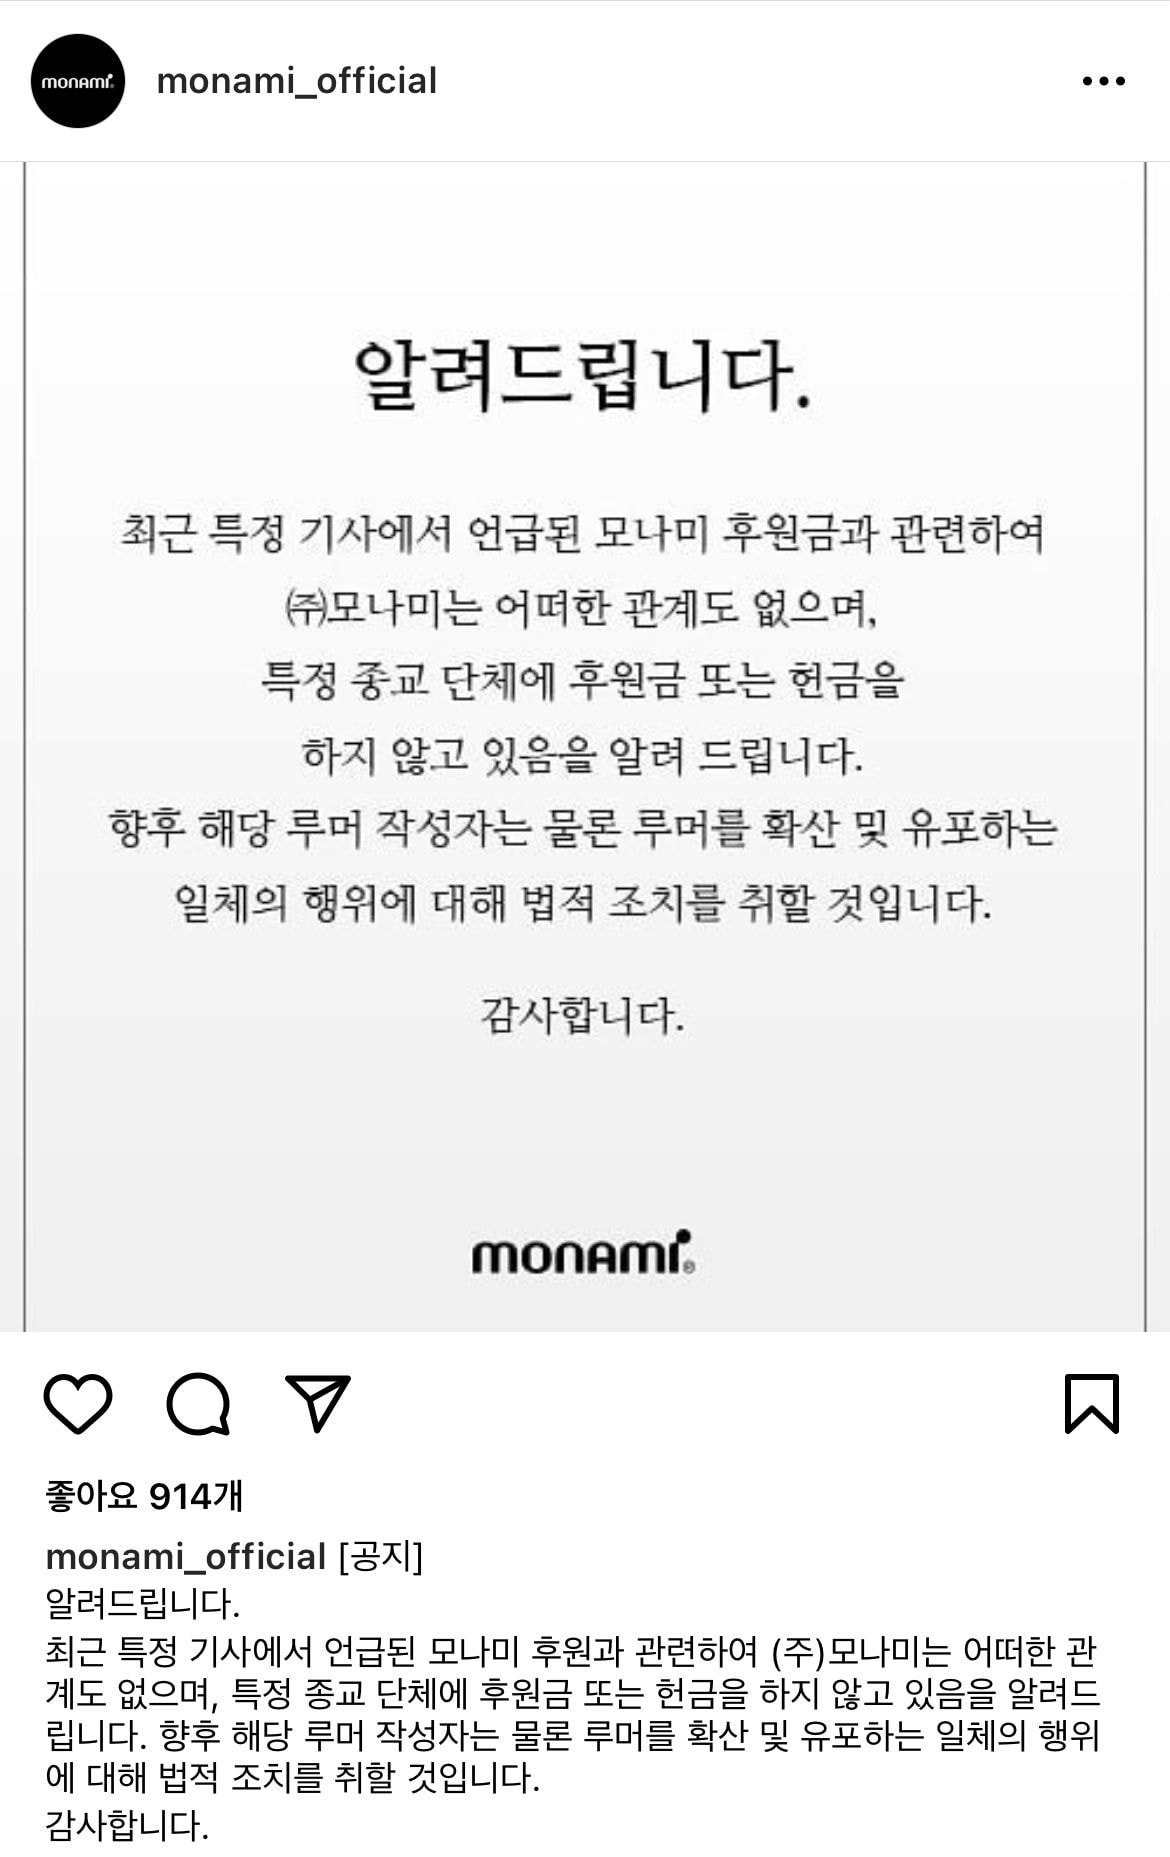 모나미 공식 인스타그램에 올라온 후원금 해명